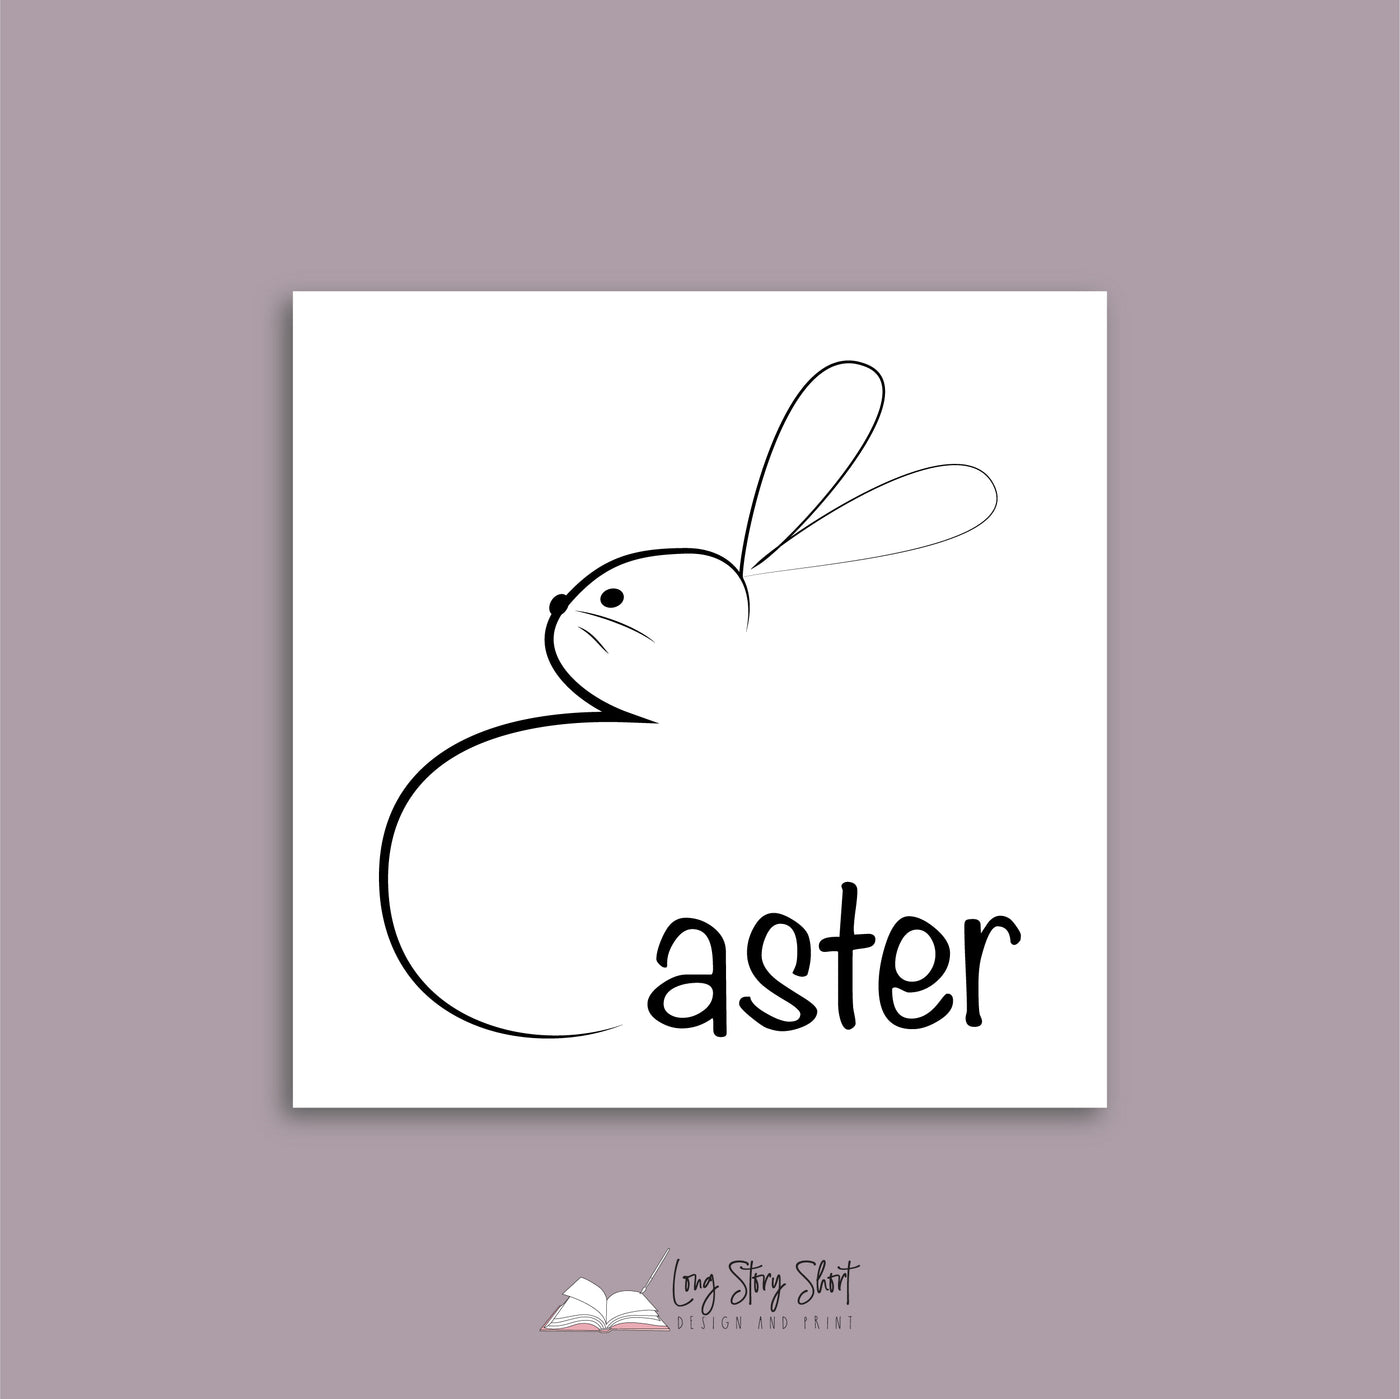 White Easter Vinyl Label Pack (Square) Matte/Gloss/Foil